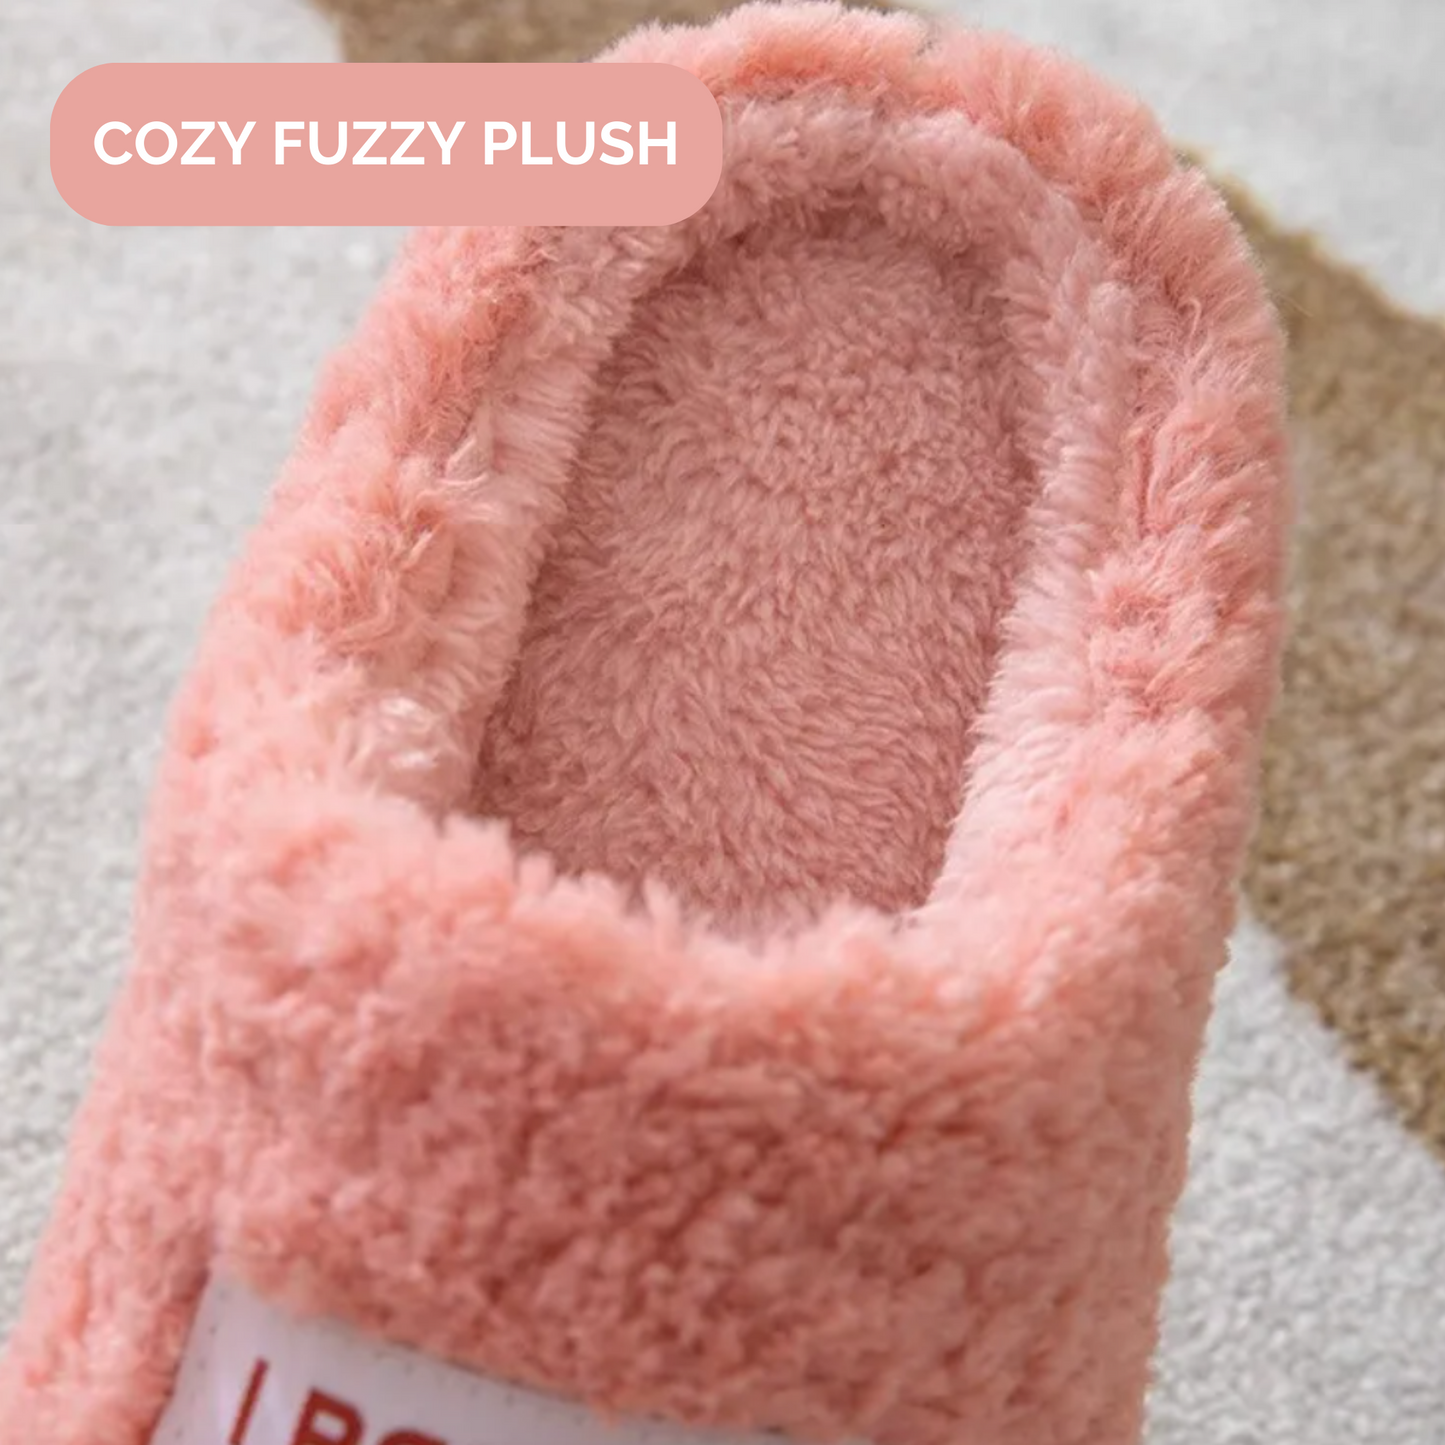 GRW Women Slippers Warm Non-slip Slip On Arch-support Fluffy Home